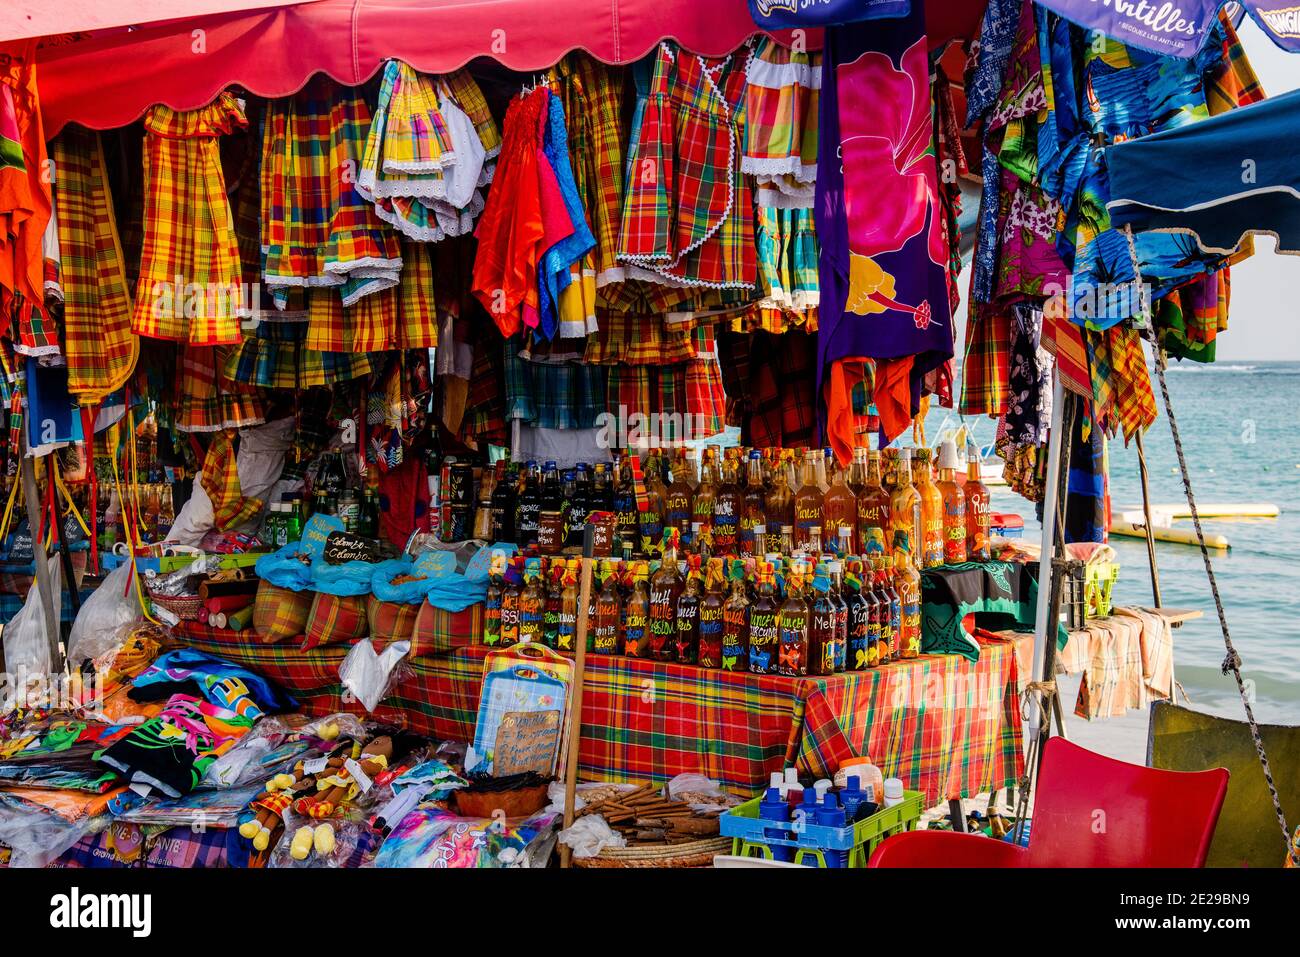 Guadalupa, Francia - 10 febbraio 2020: Mercato turistico tipico della Guadalupa che vende bevande tradizionali, spezie e altri prodotti. Foto Stock